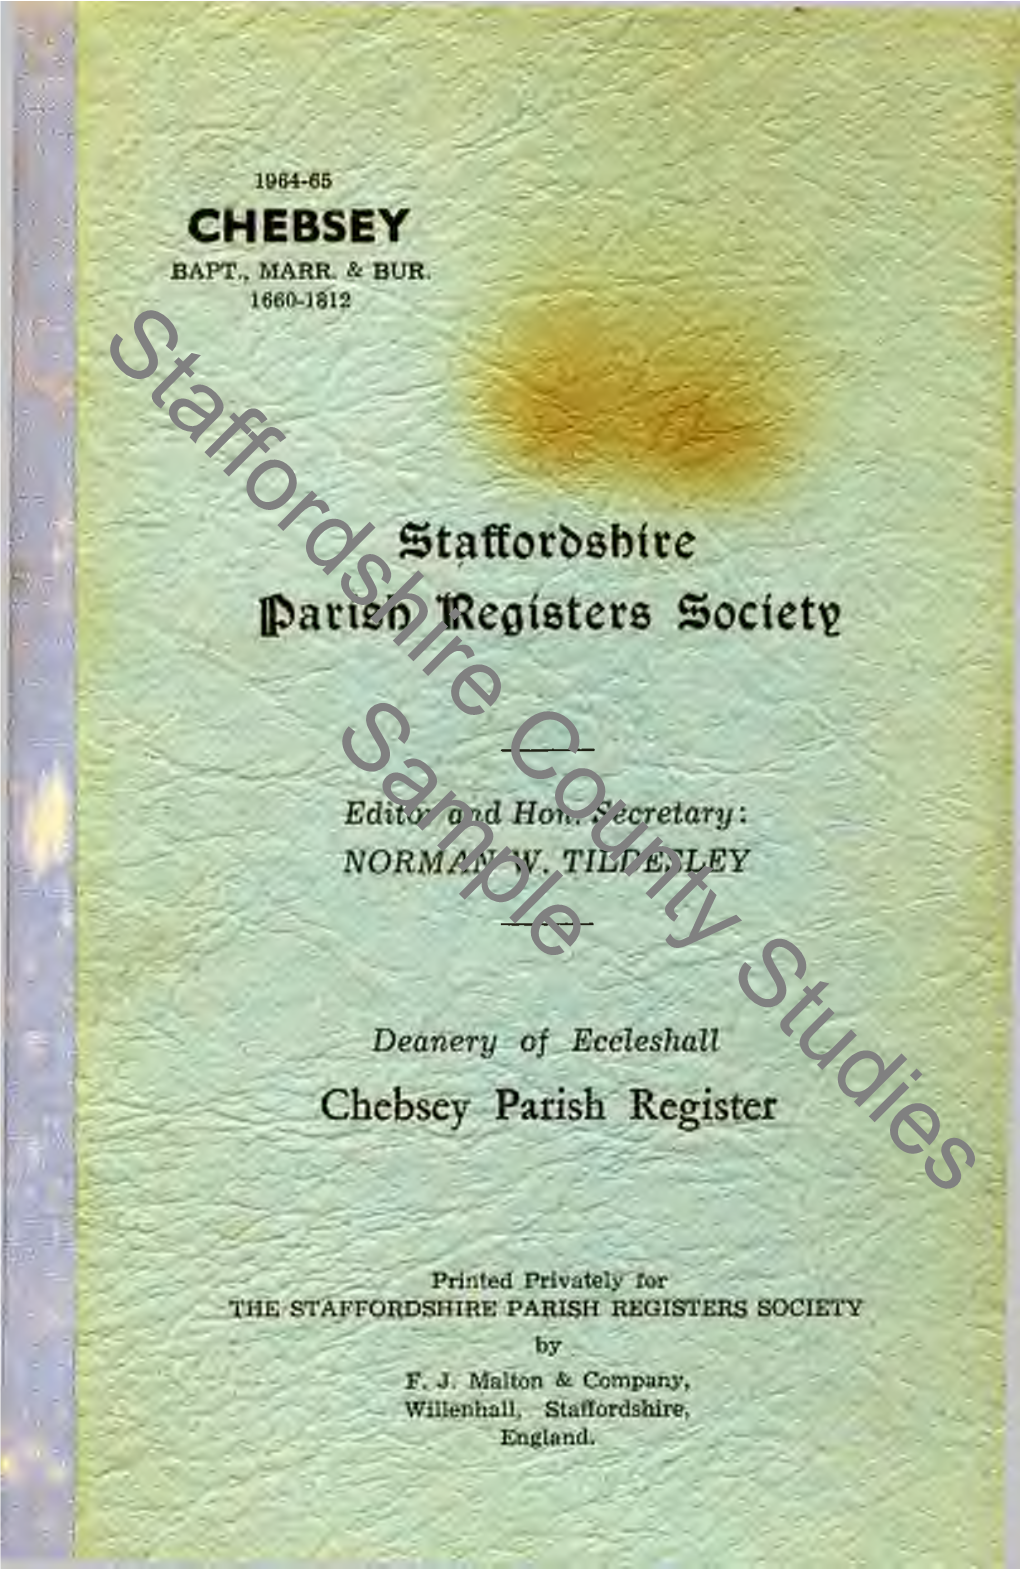 Chebsey Parish Register, 1660-1812